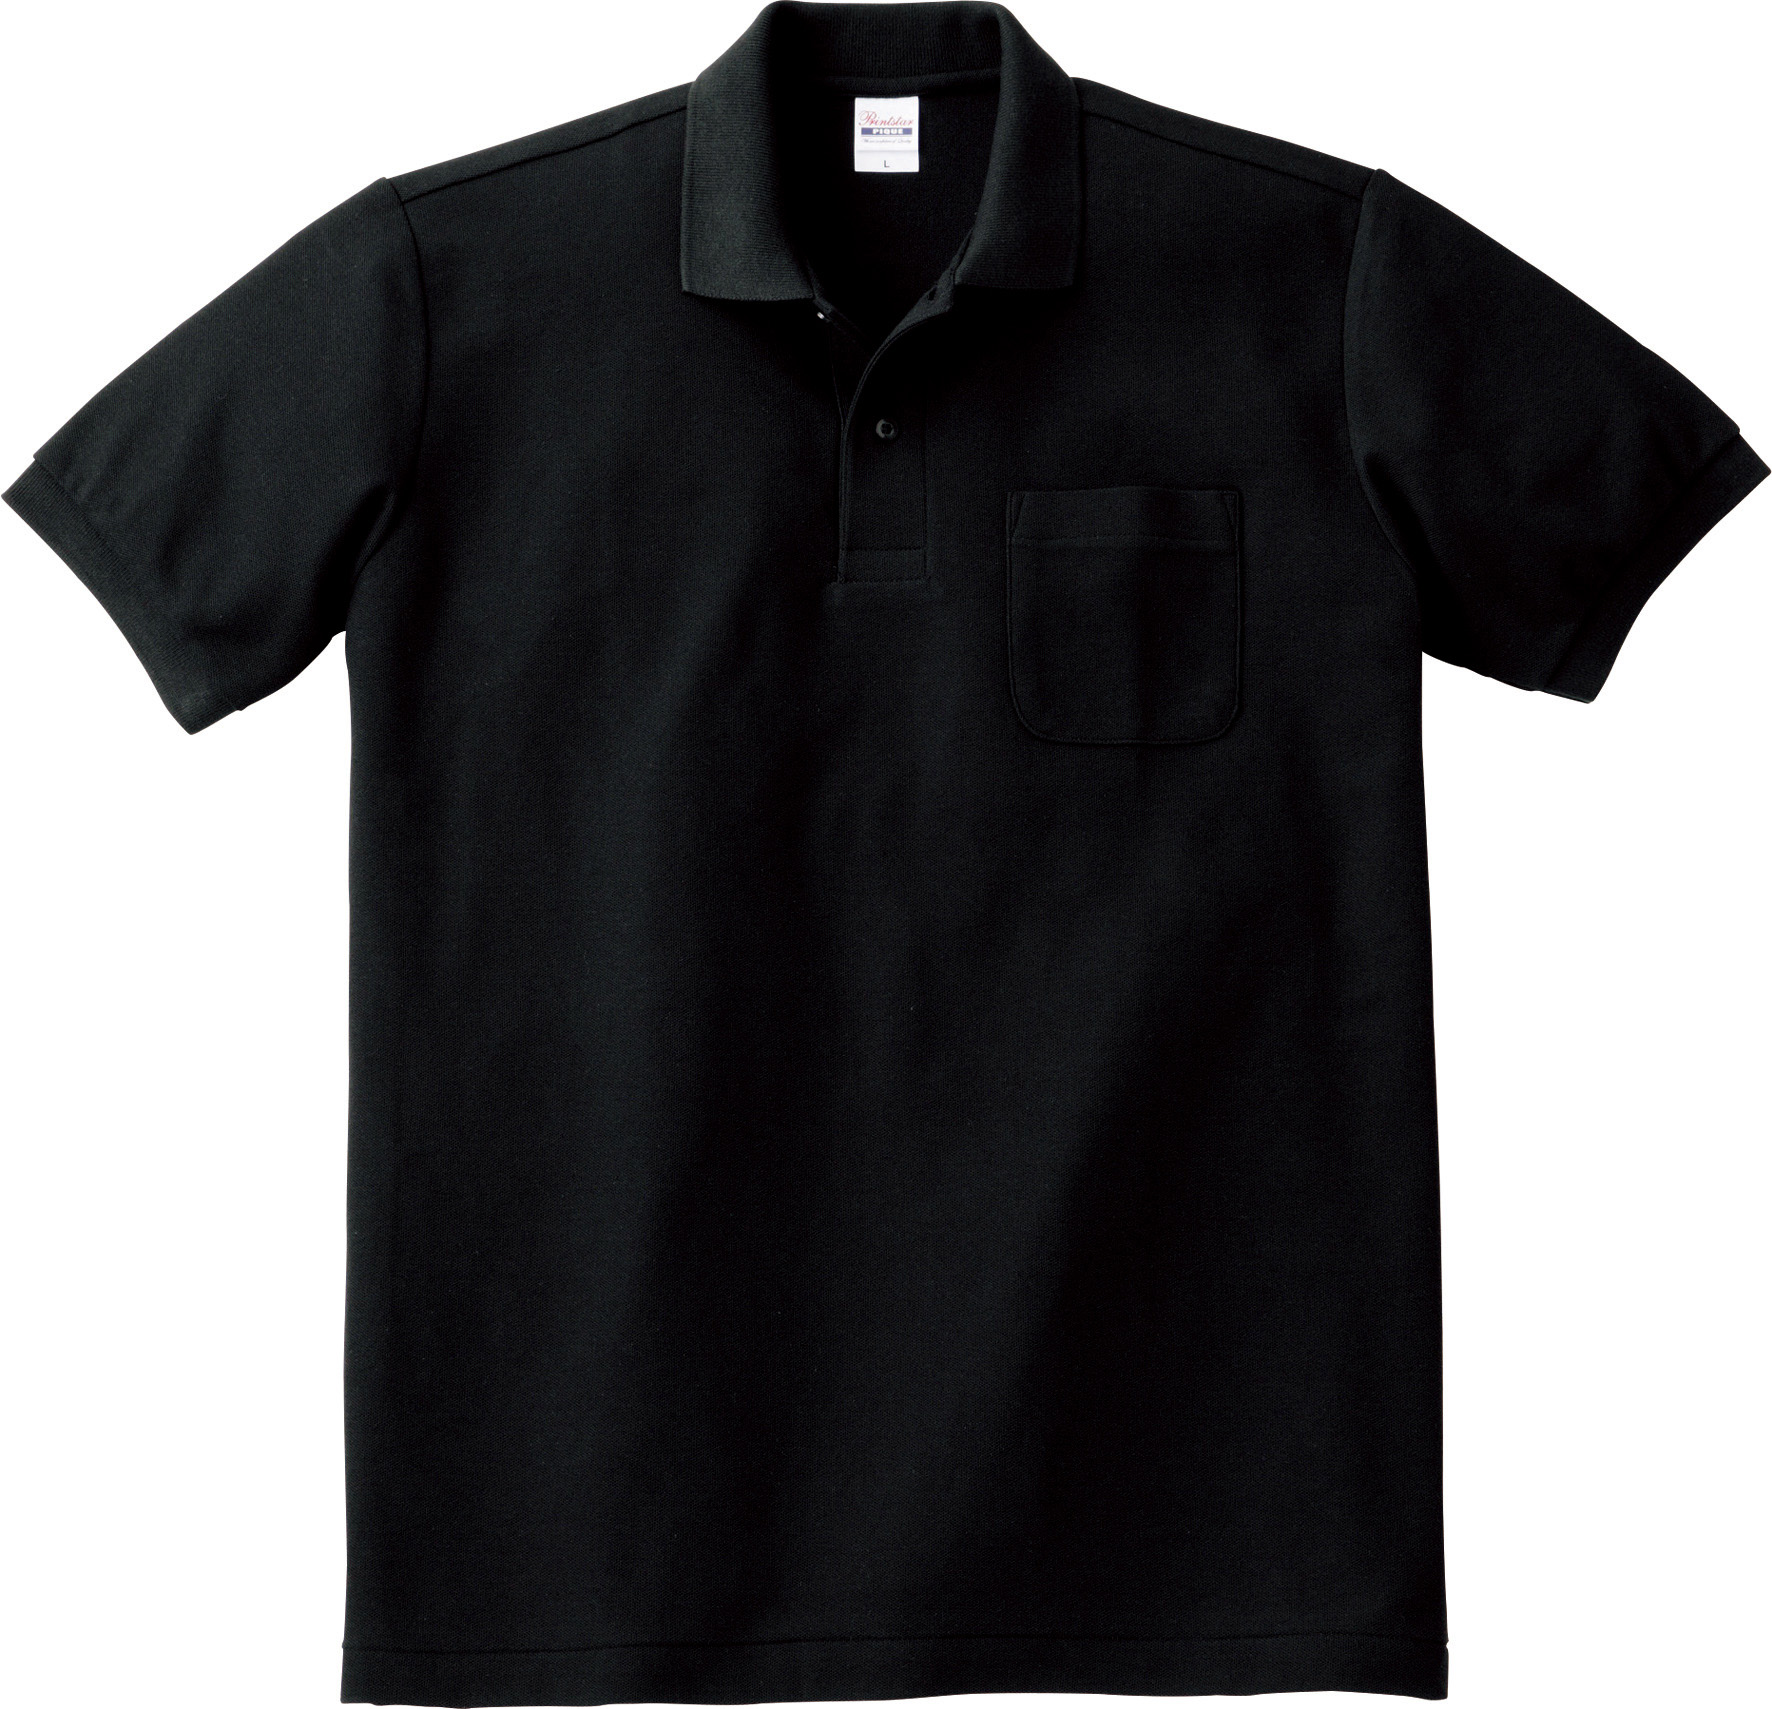 ポロシャツネーム – ポロシャツネームはポロシャツの胸ワンポイントに文字を入れて刺繍できるサービス